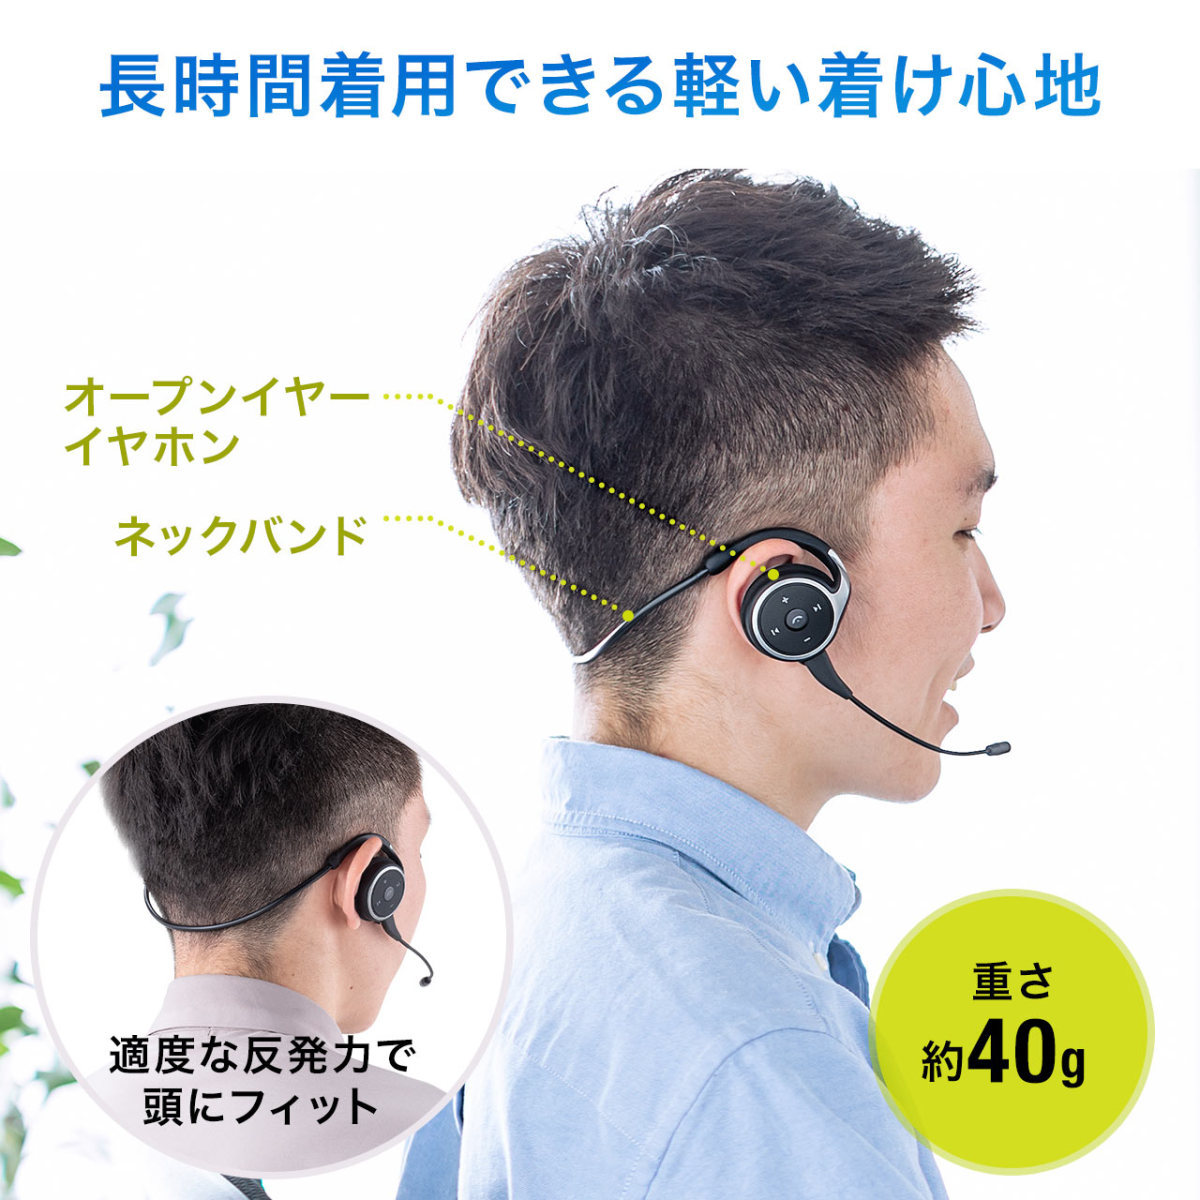 ヘッドセット Bluetooth ワイヤレス ネックバンド型 軽量 2WAY 外付けマイク ノイズキャンセル テレワーク スマホ Bluetooth イヤホン 400-BTSH020BK